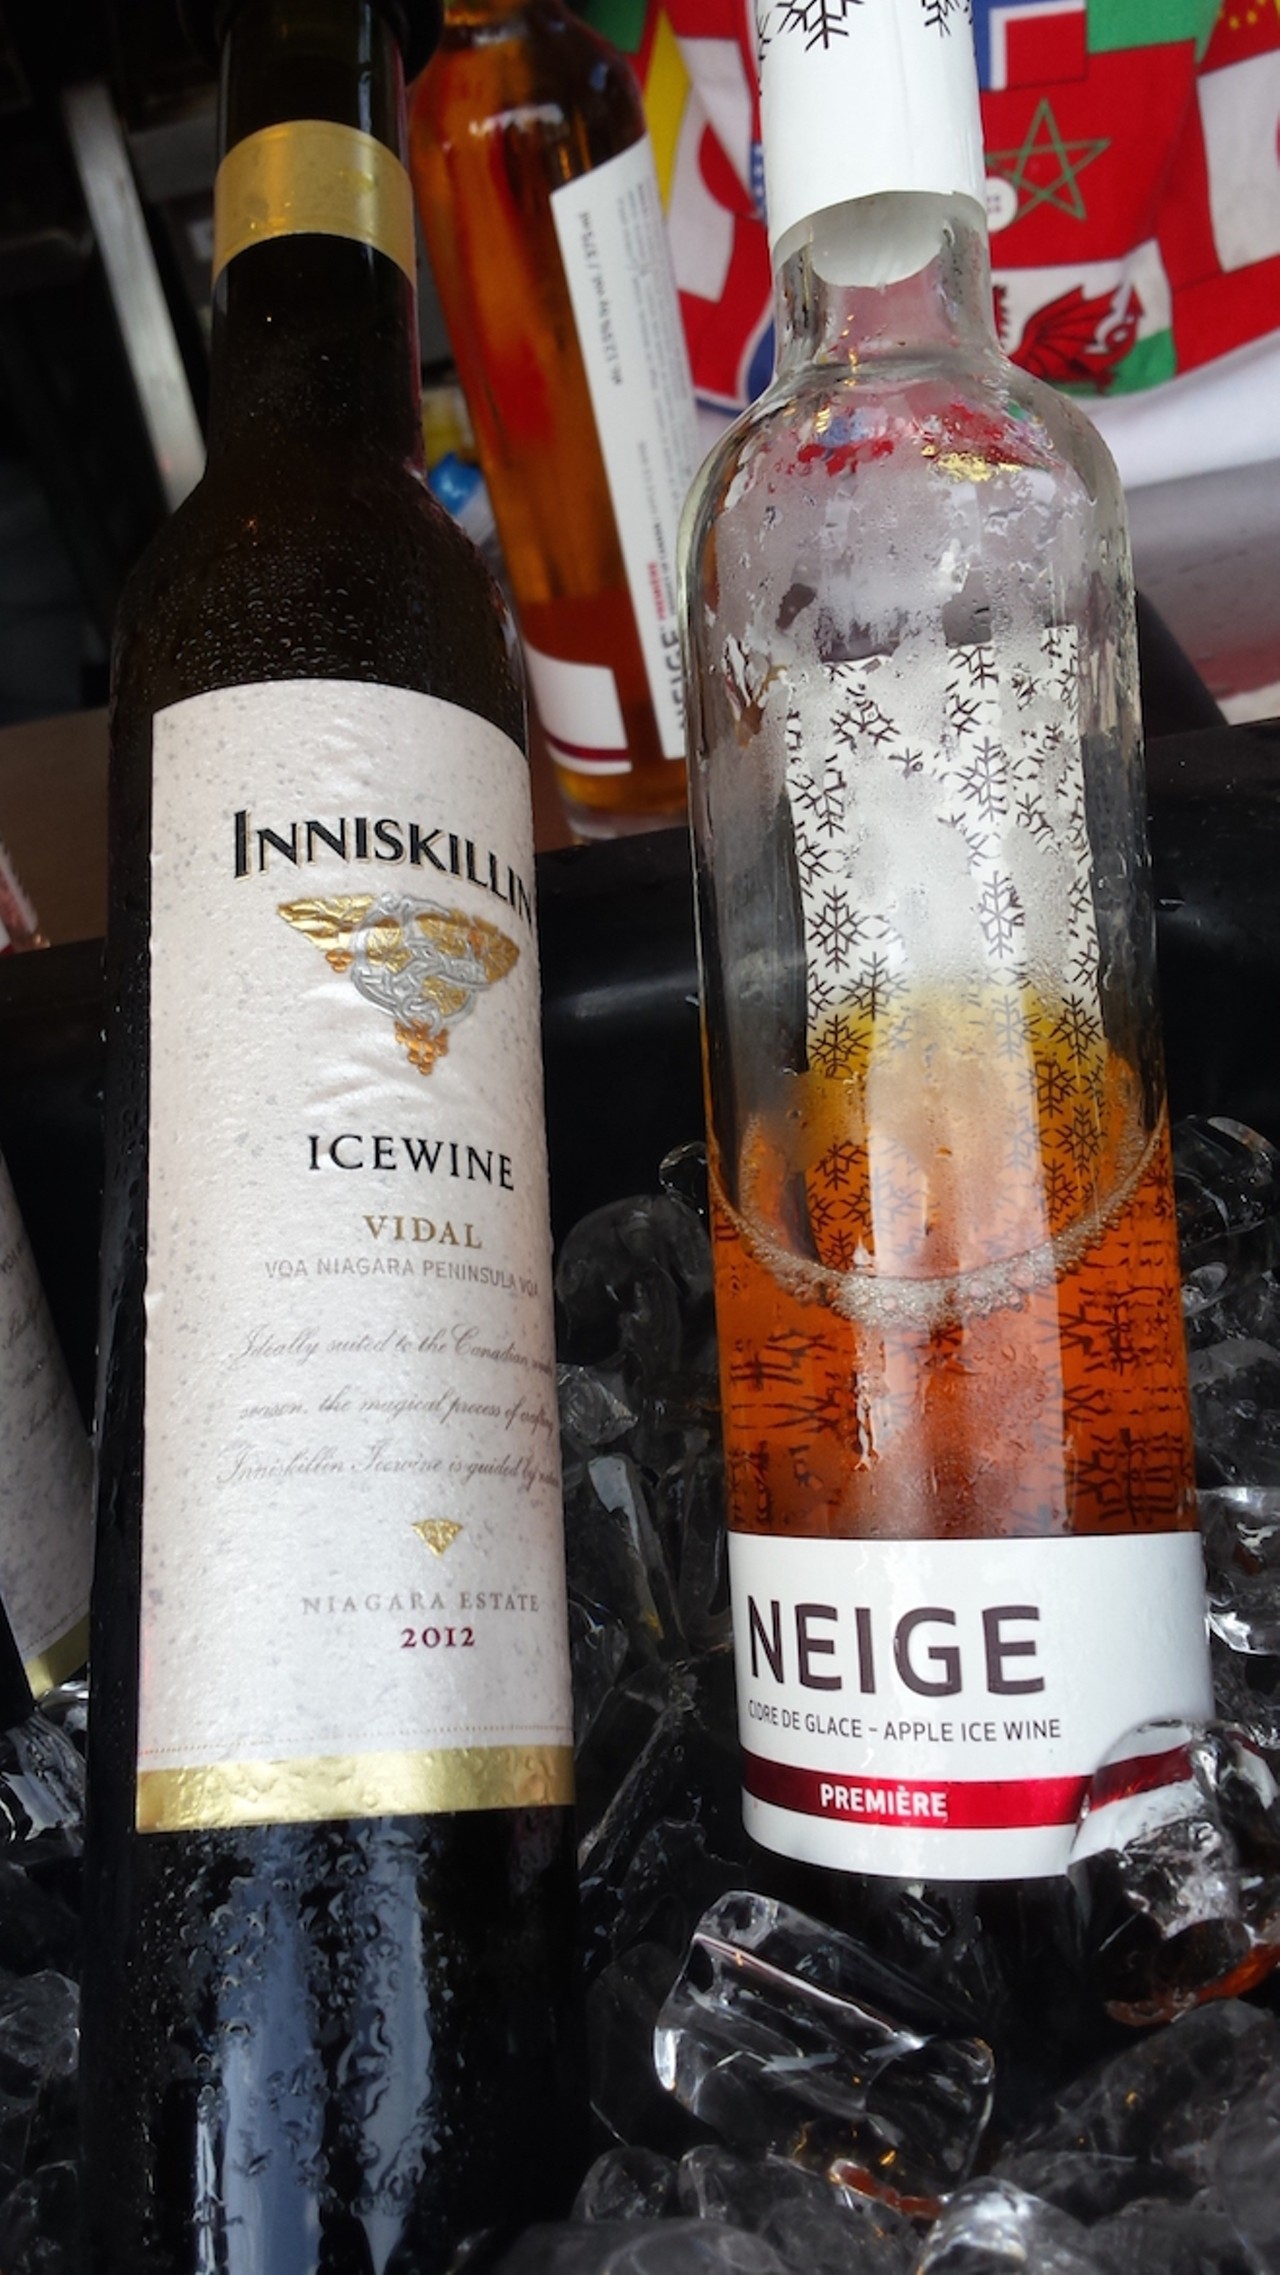 Inniskillin Vidal Icewine and Neige Premiere Apple Ice Wine (Canada)